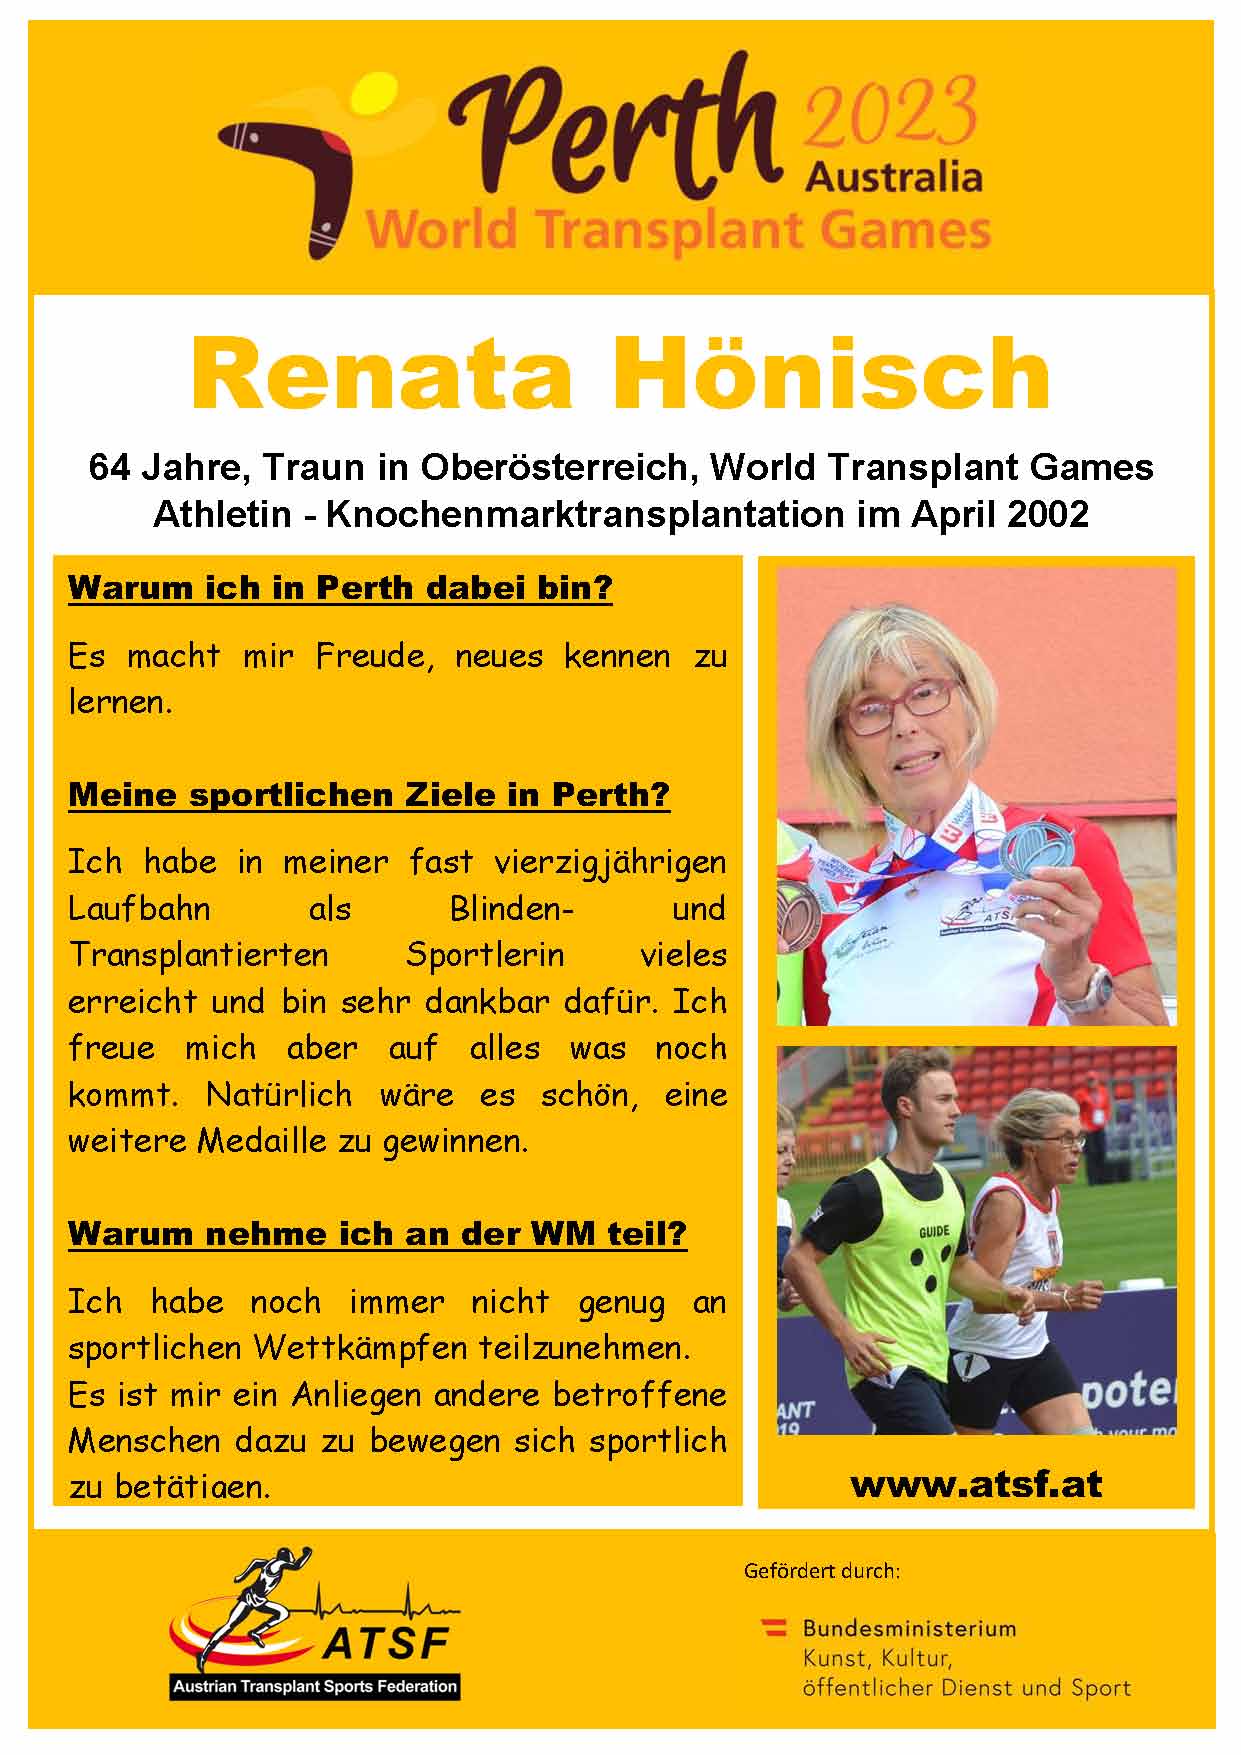 Renata Hönisch